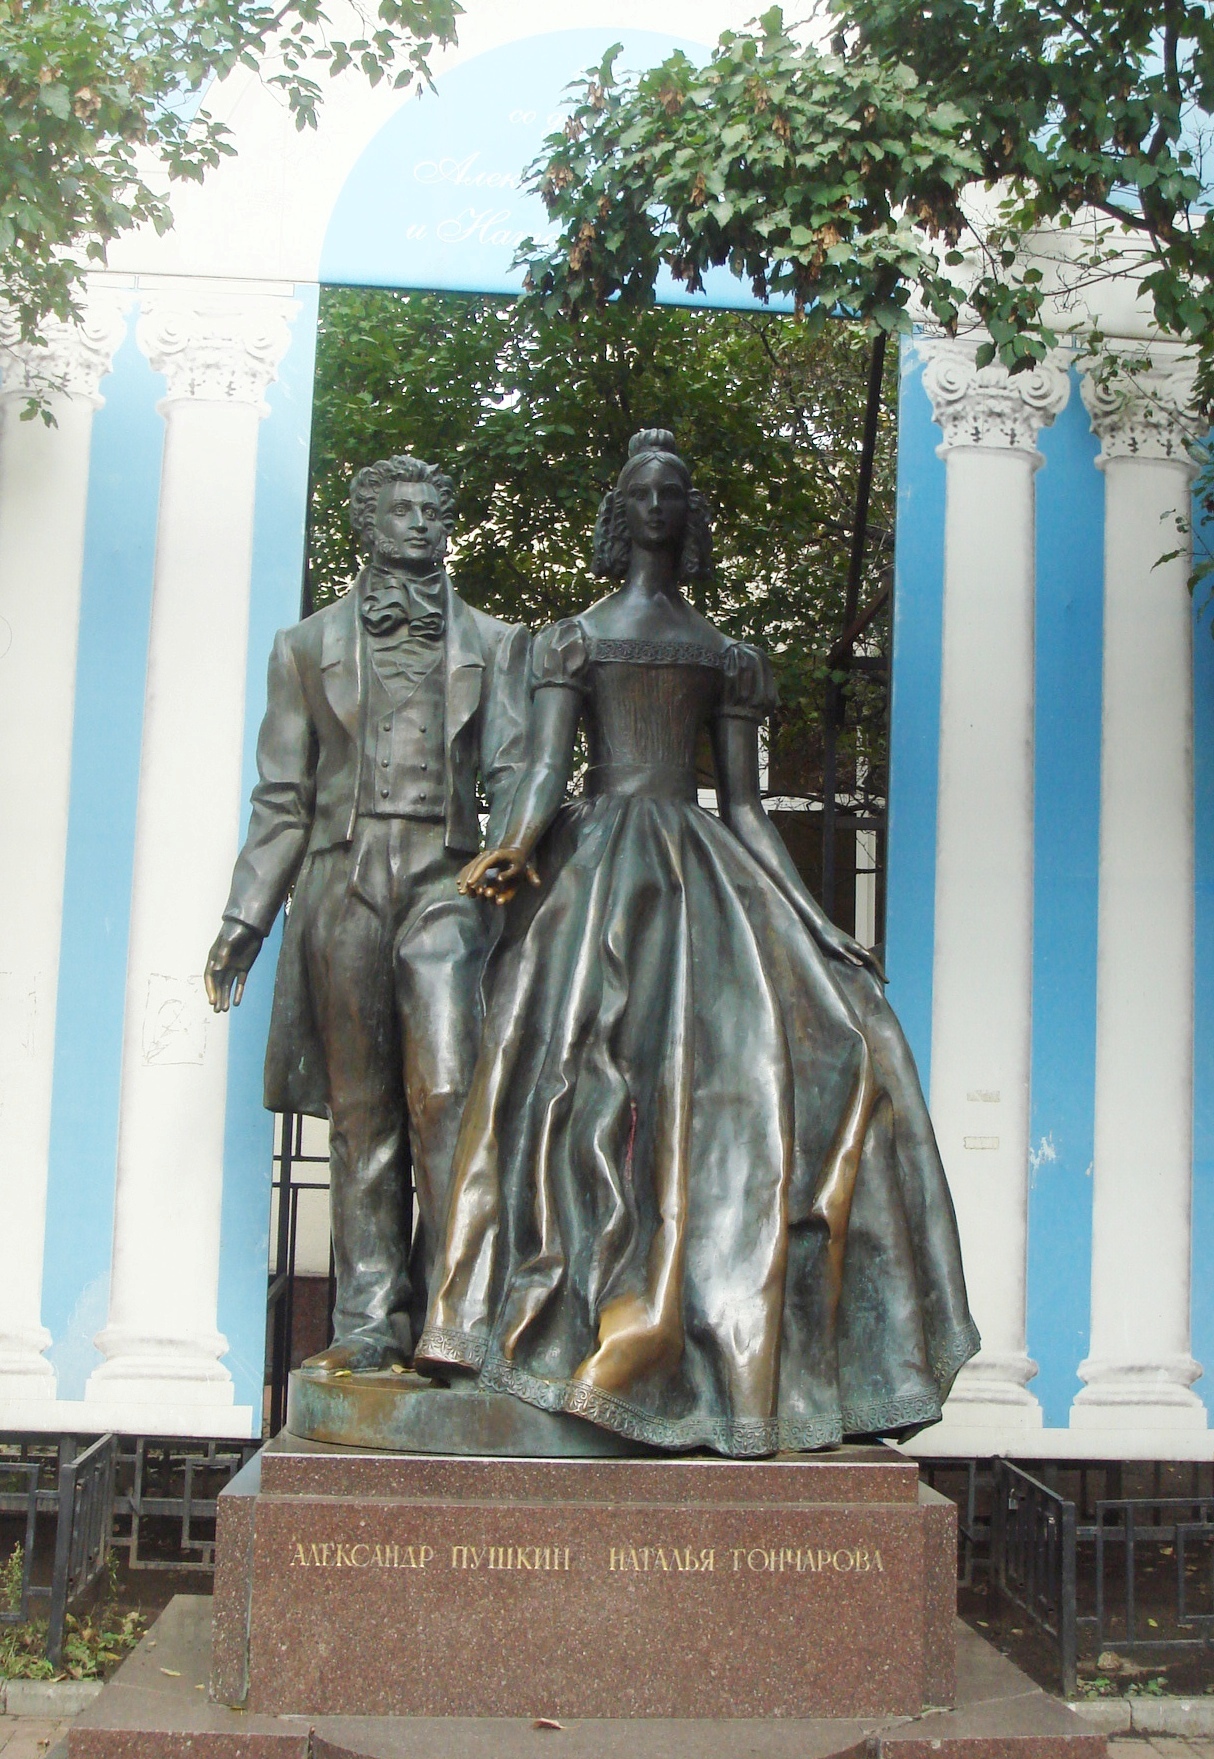 阿尔巴特街上立着普希金与他妻子的雕像